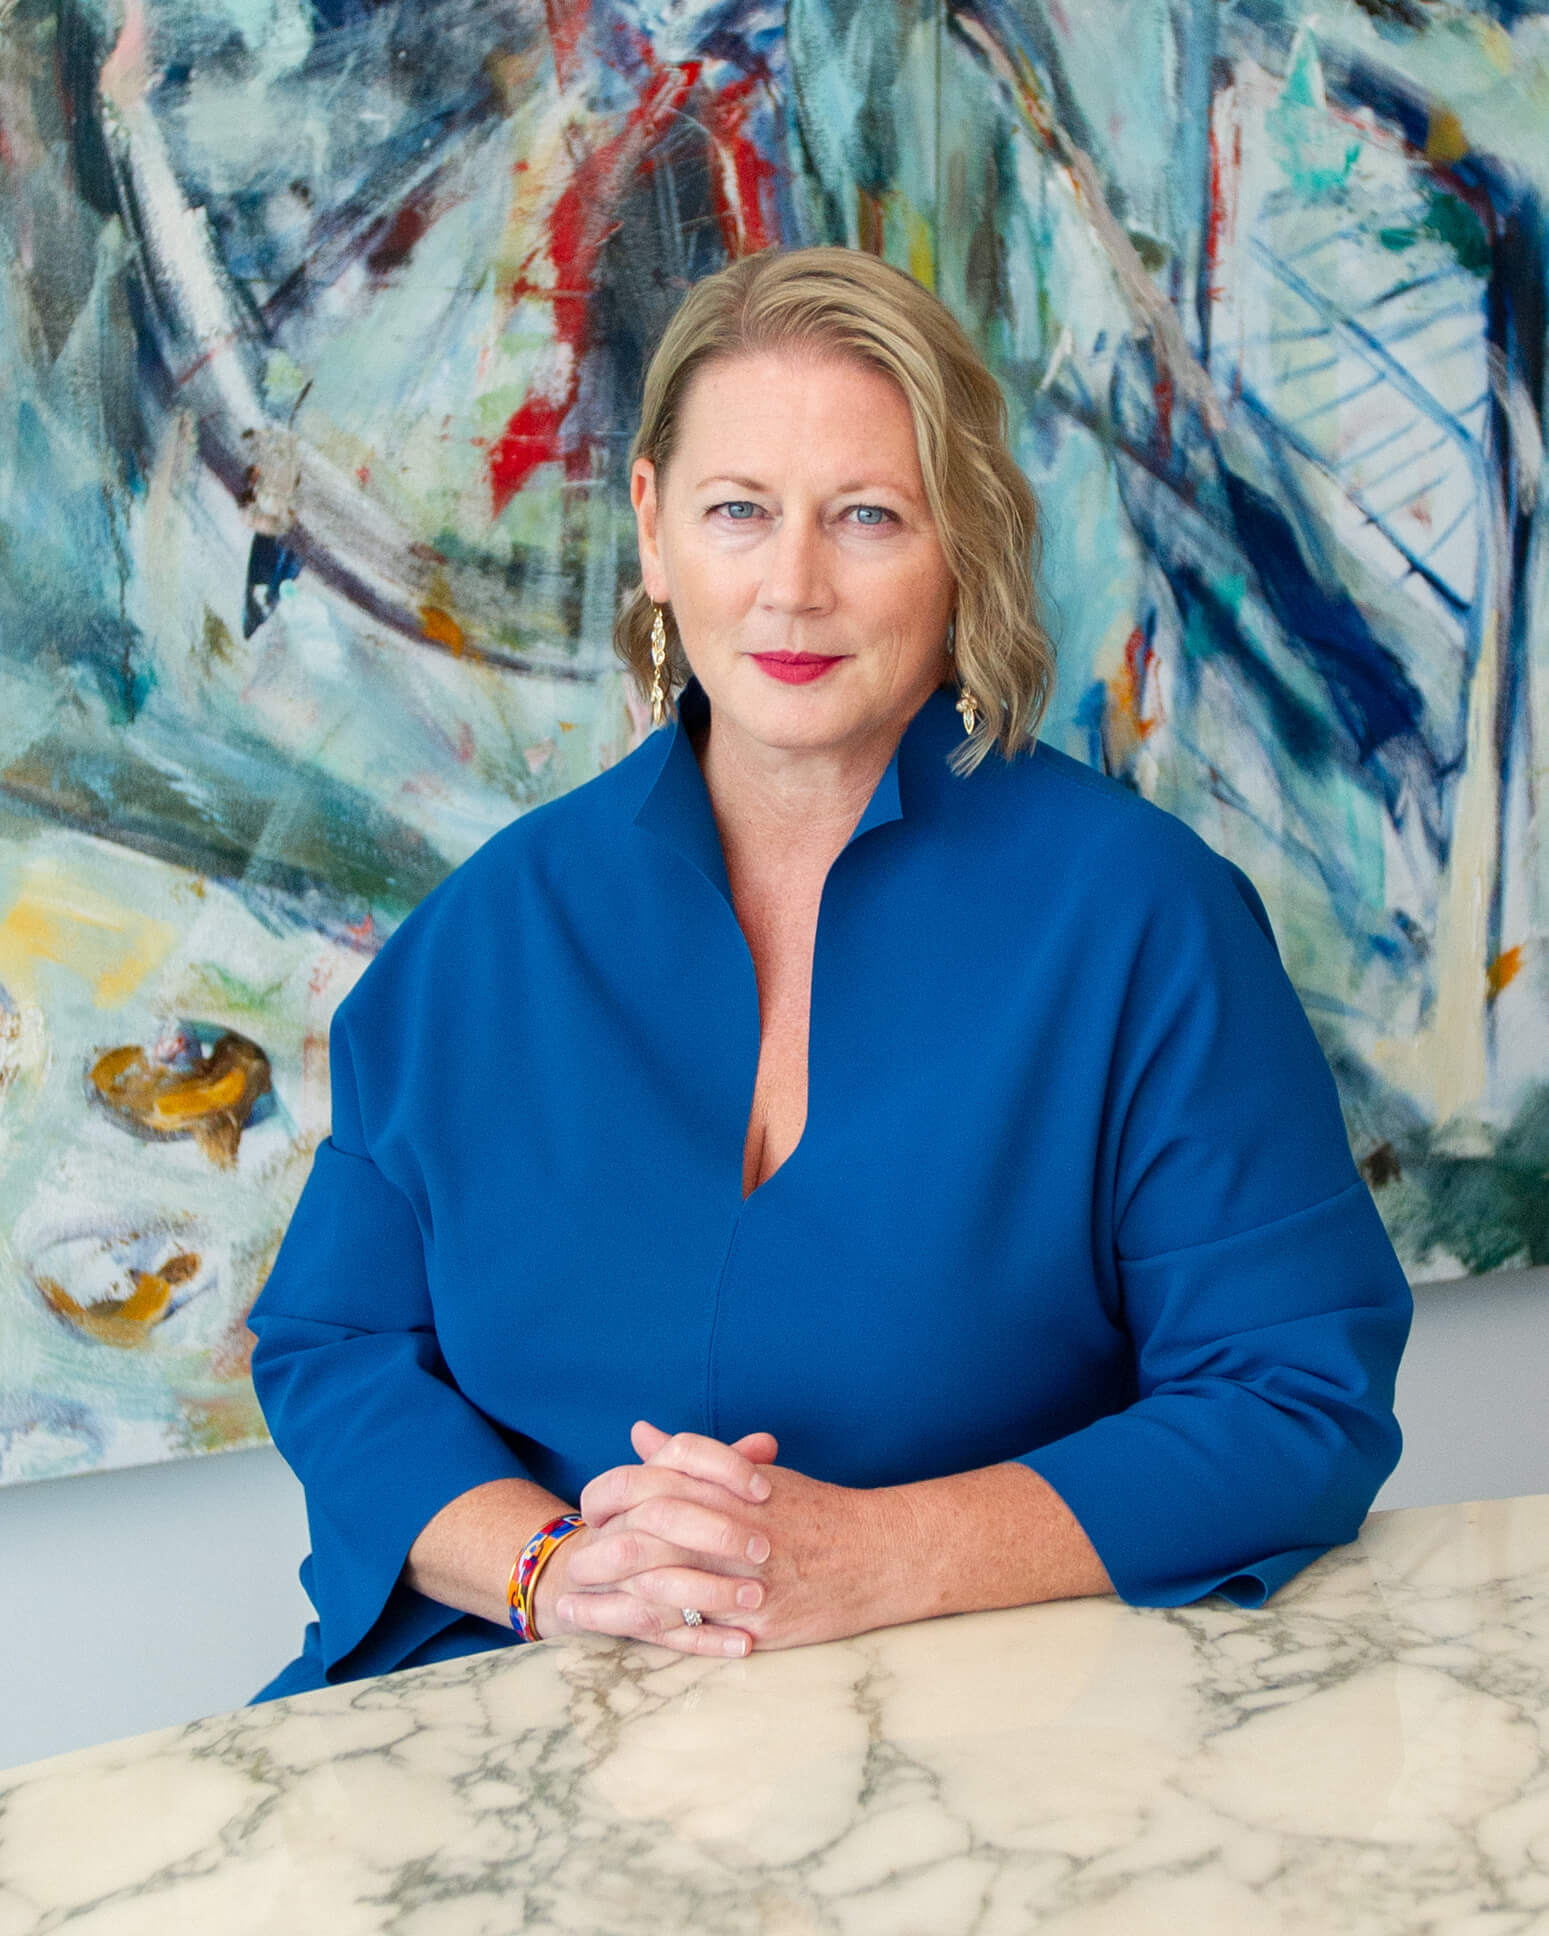 Kopfschuss von CEO Virginia Devlin. Sie hat schulterlanges blondes Haar, blaue Augen und trägt ein blaues Oberteil, sie sitzt vor einer bunt gemusterten Wand.